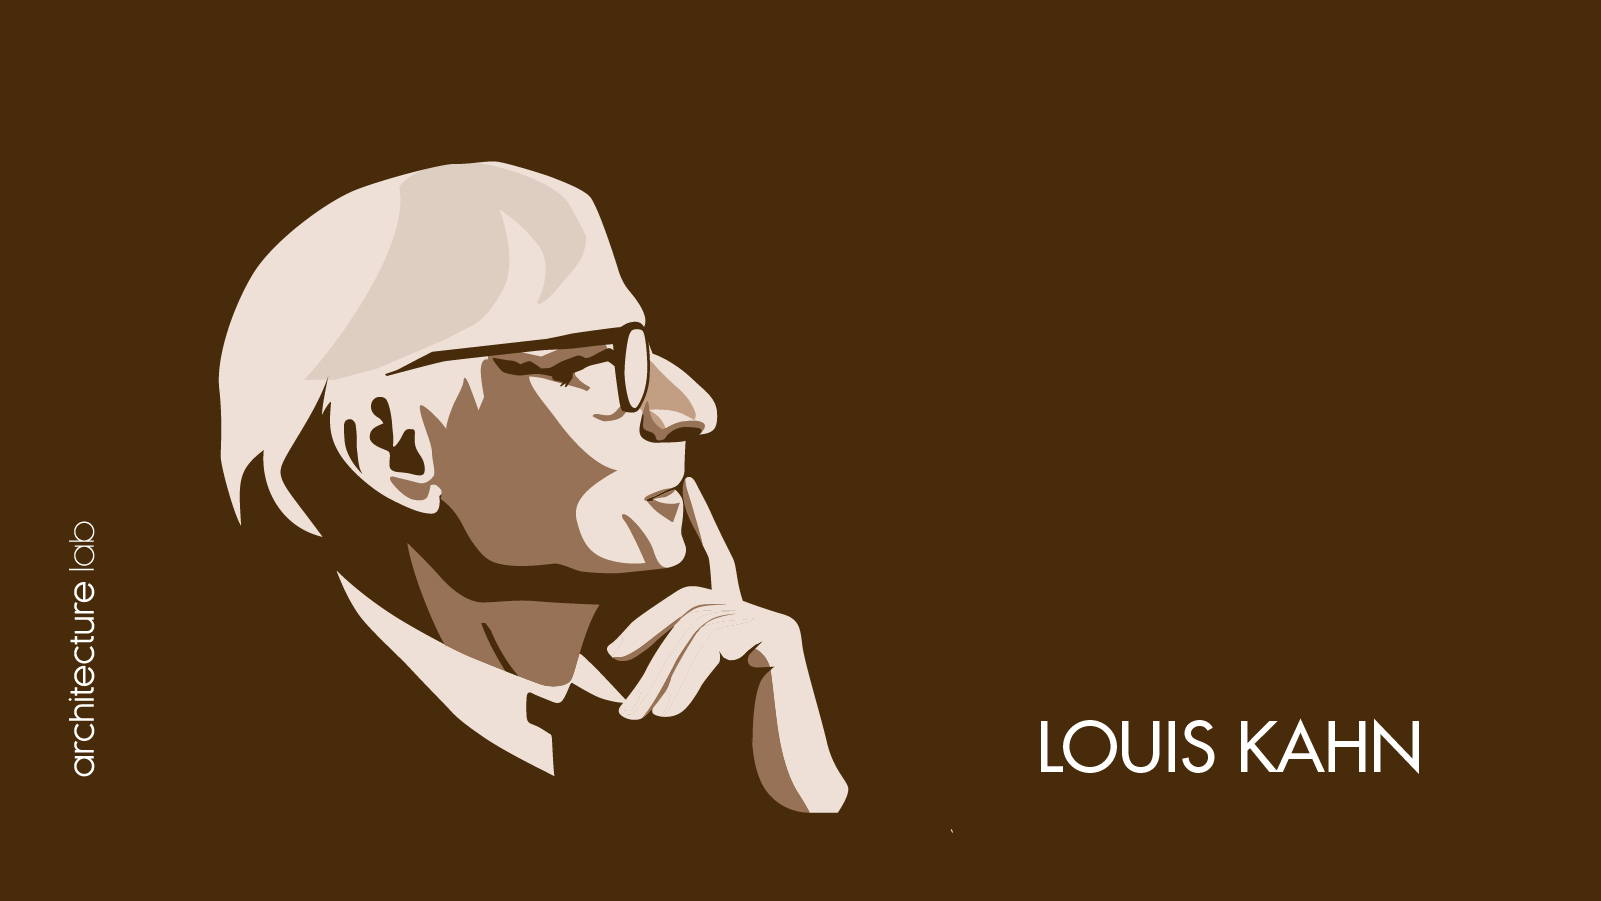 Louis kahn: biography, works, awards